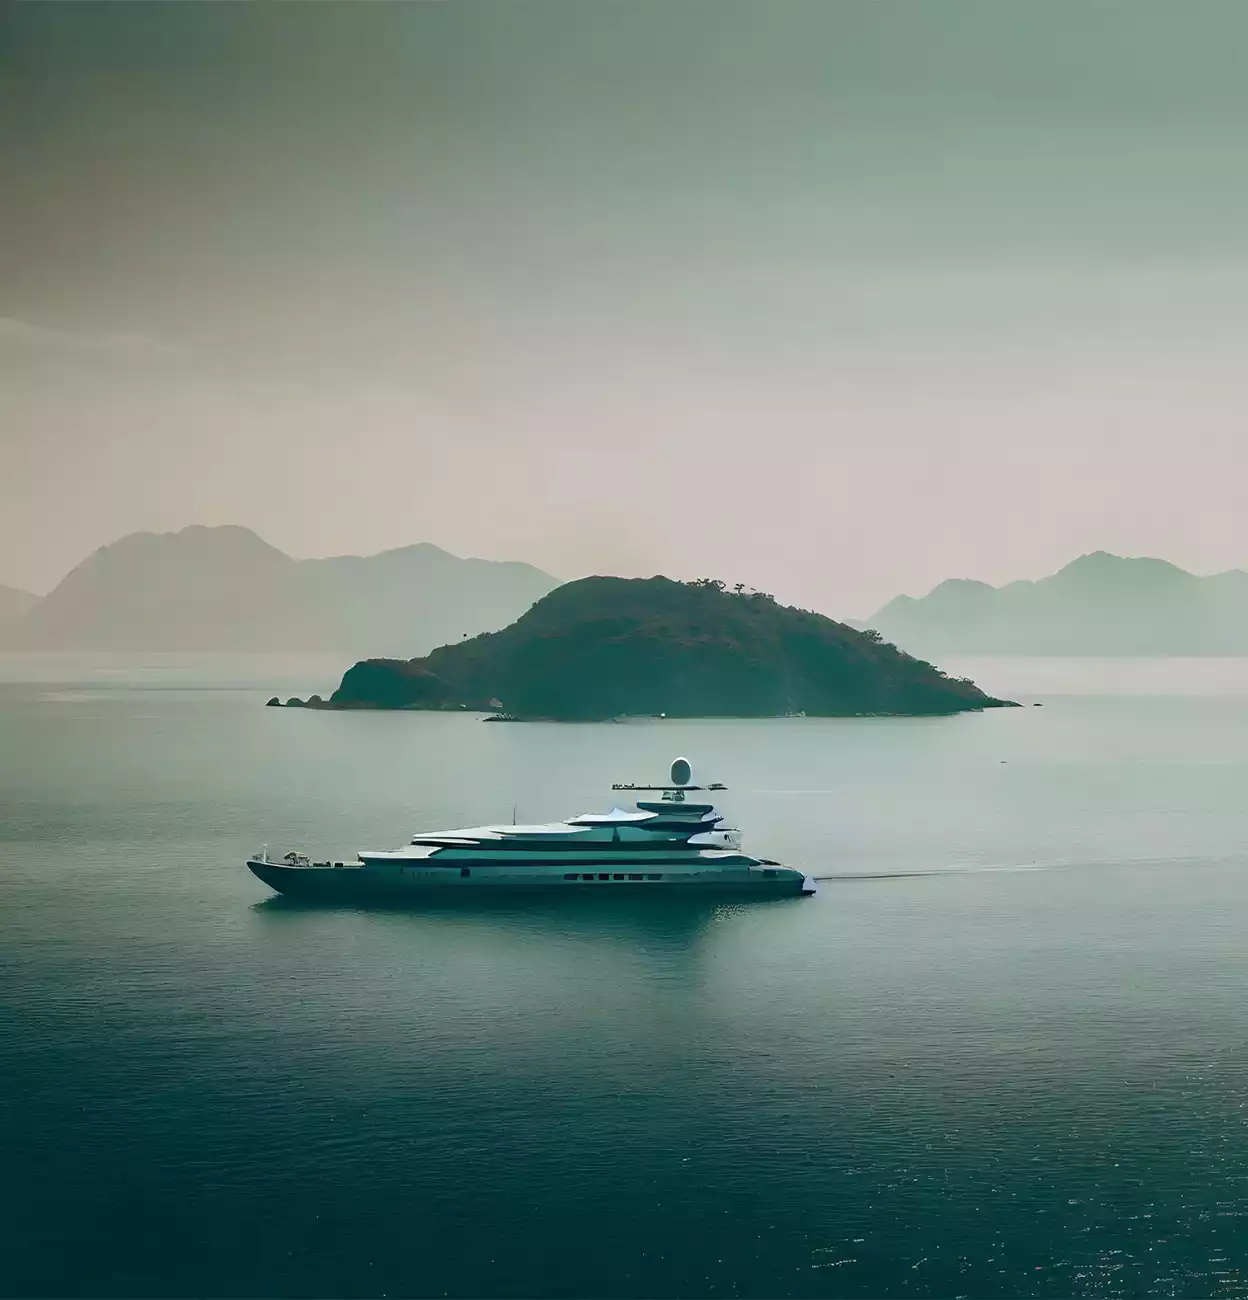 Ένα εντυπωσιακό super yachts στη θάλασσα σε απογευματινό background.